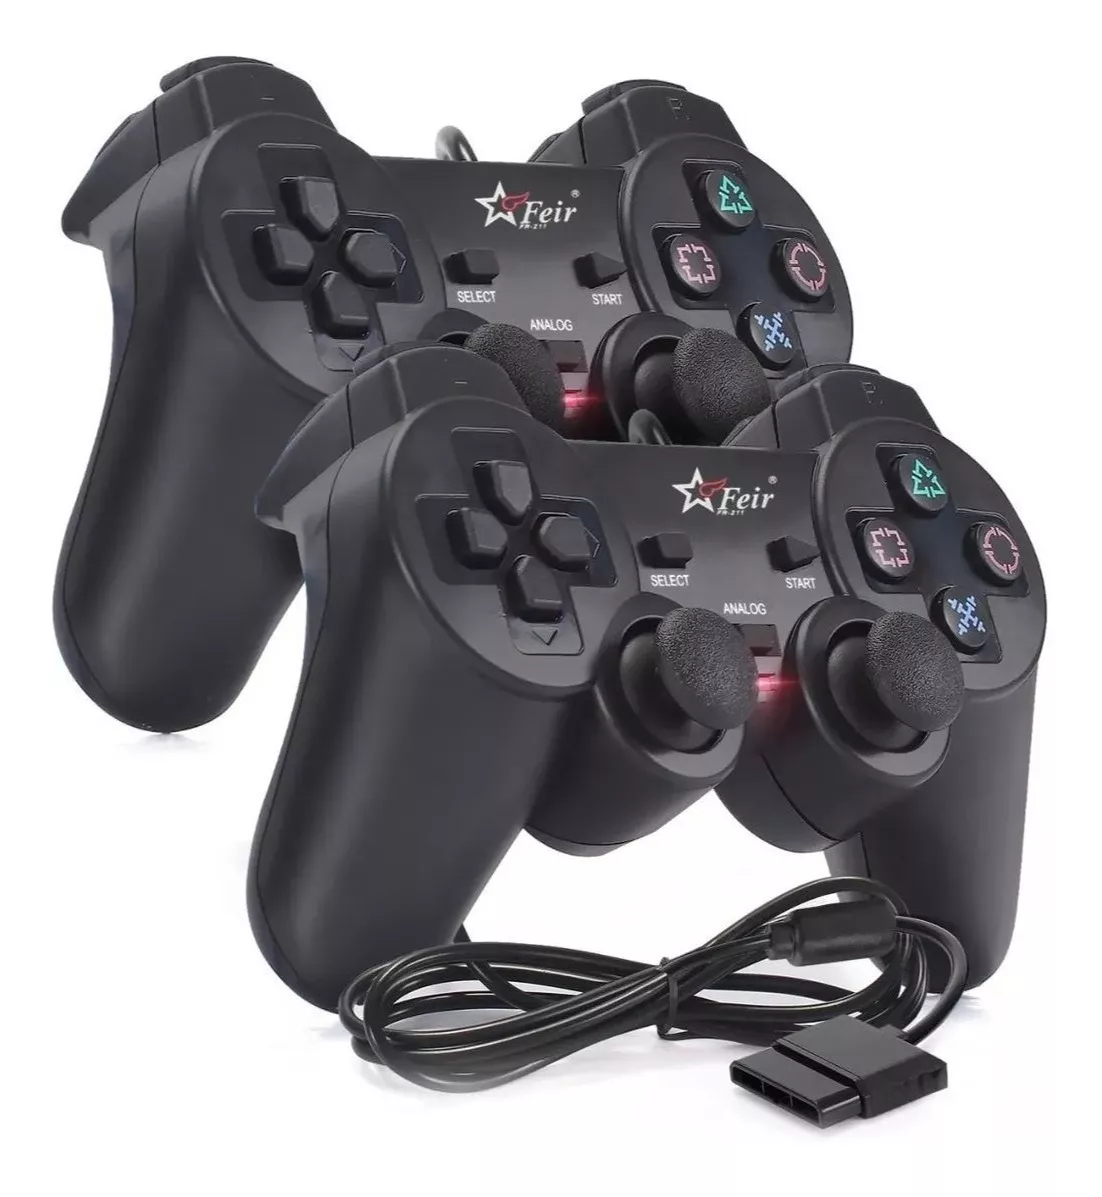 Kit 2 Controle Playstation 2 Com Fio Dualshock Com Vibração